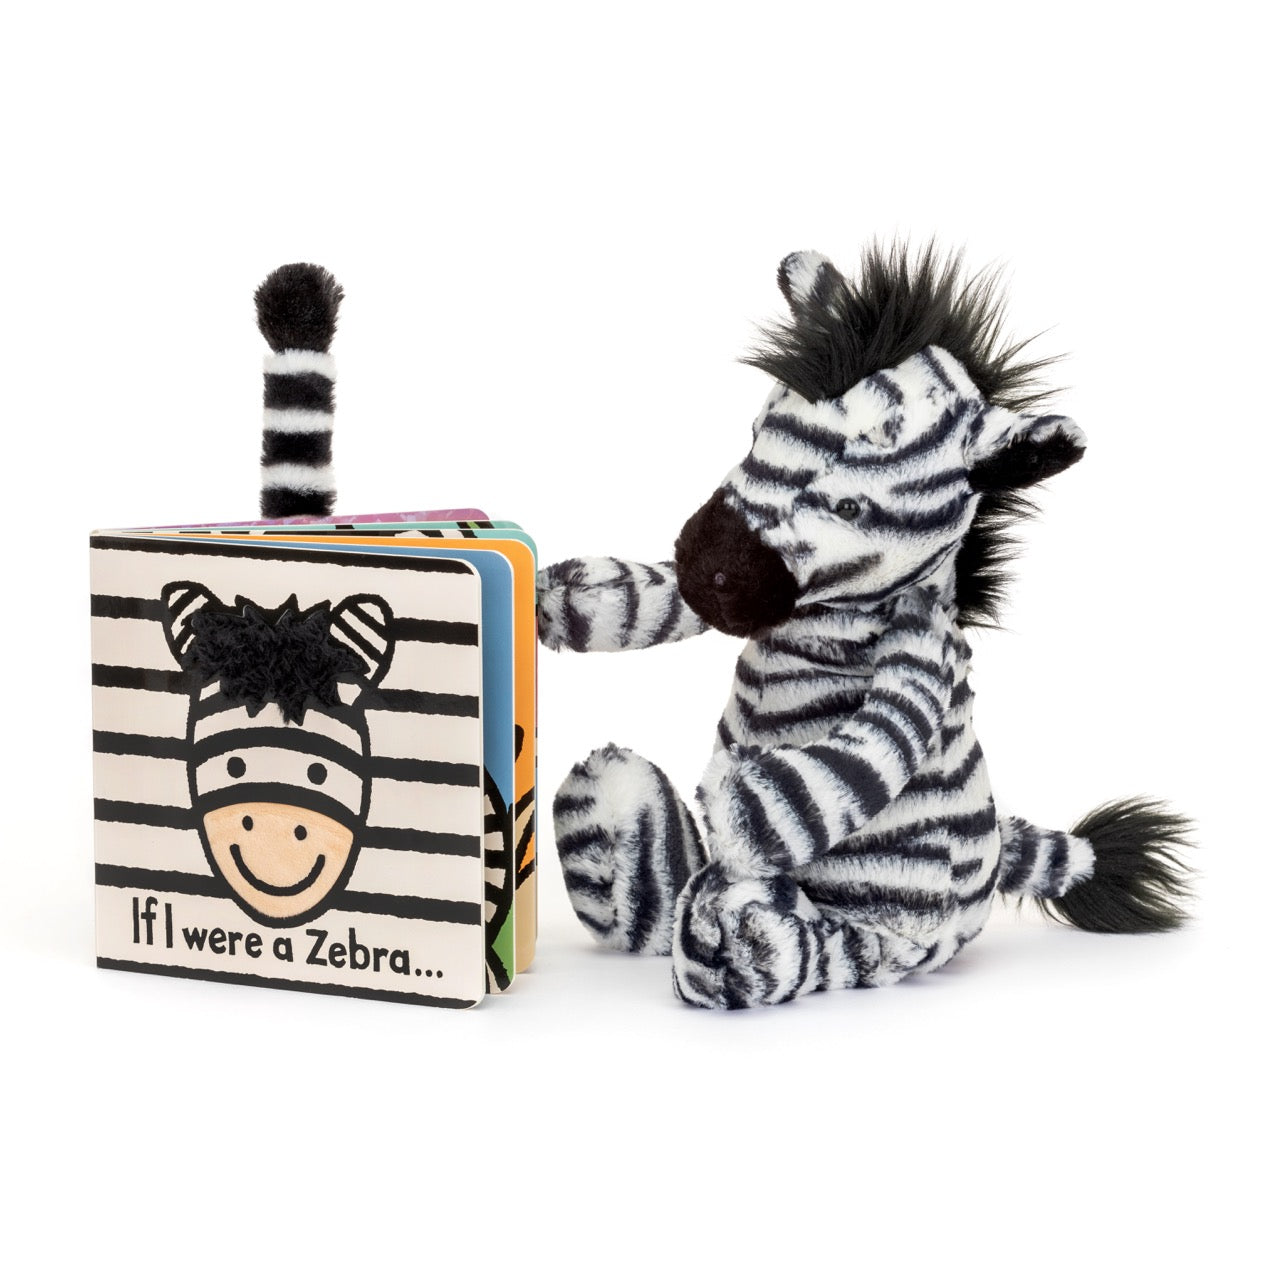 If I were a Zebra Board Book